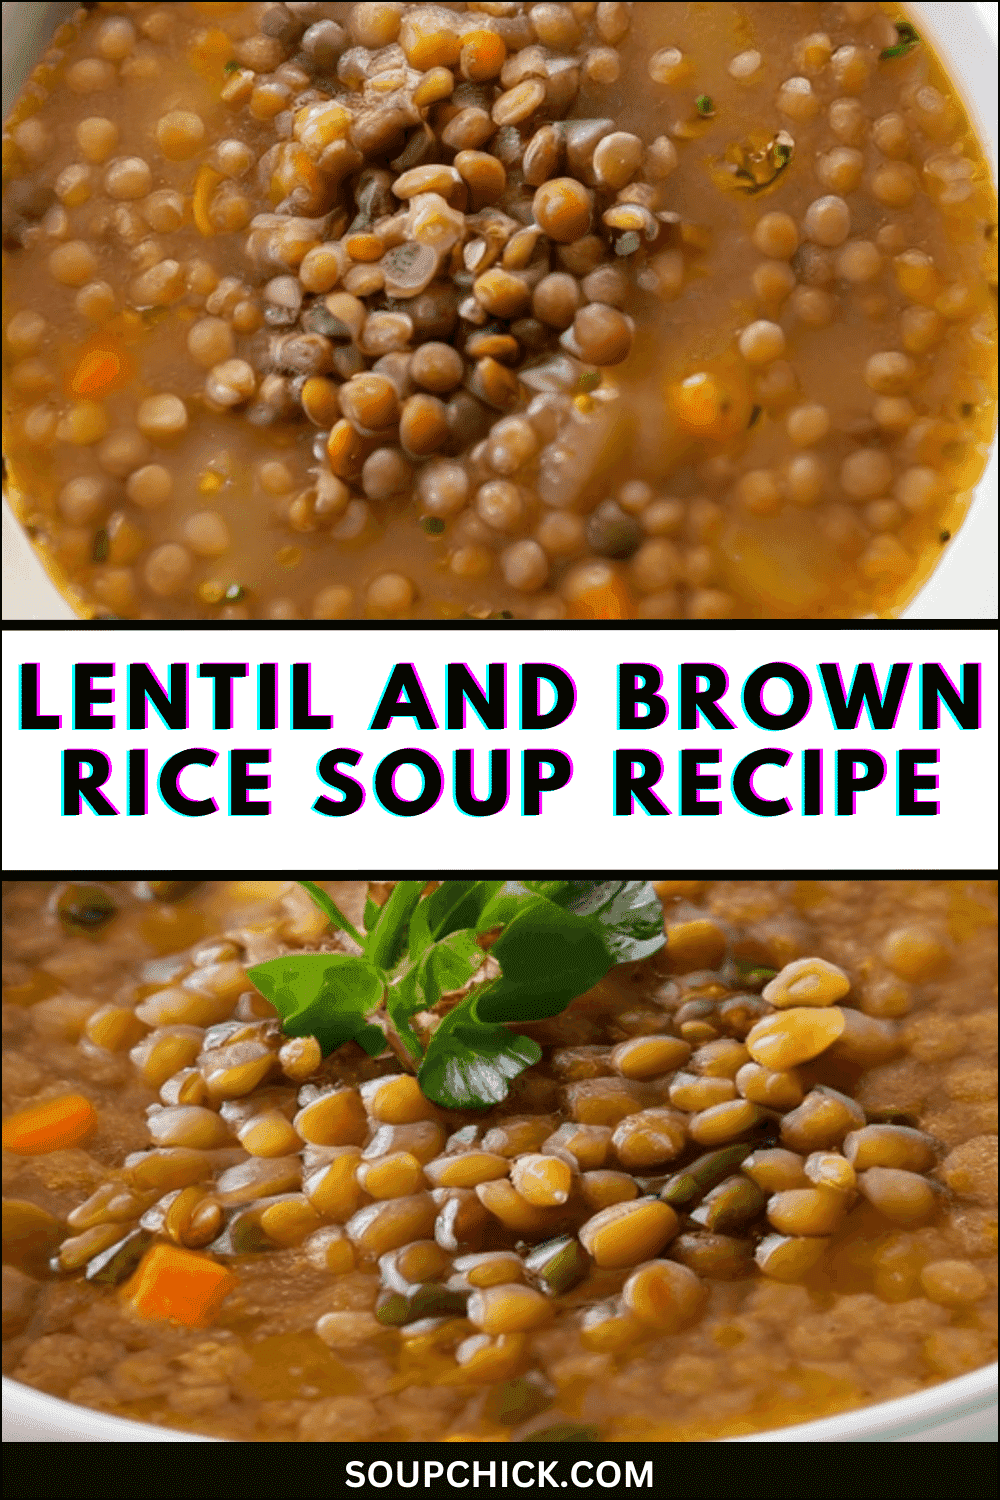 Lentil And Brown Rice Soup Recipe (A Unique Delicious Twist) - Soup Chick